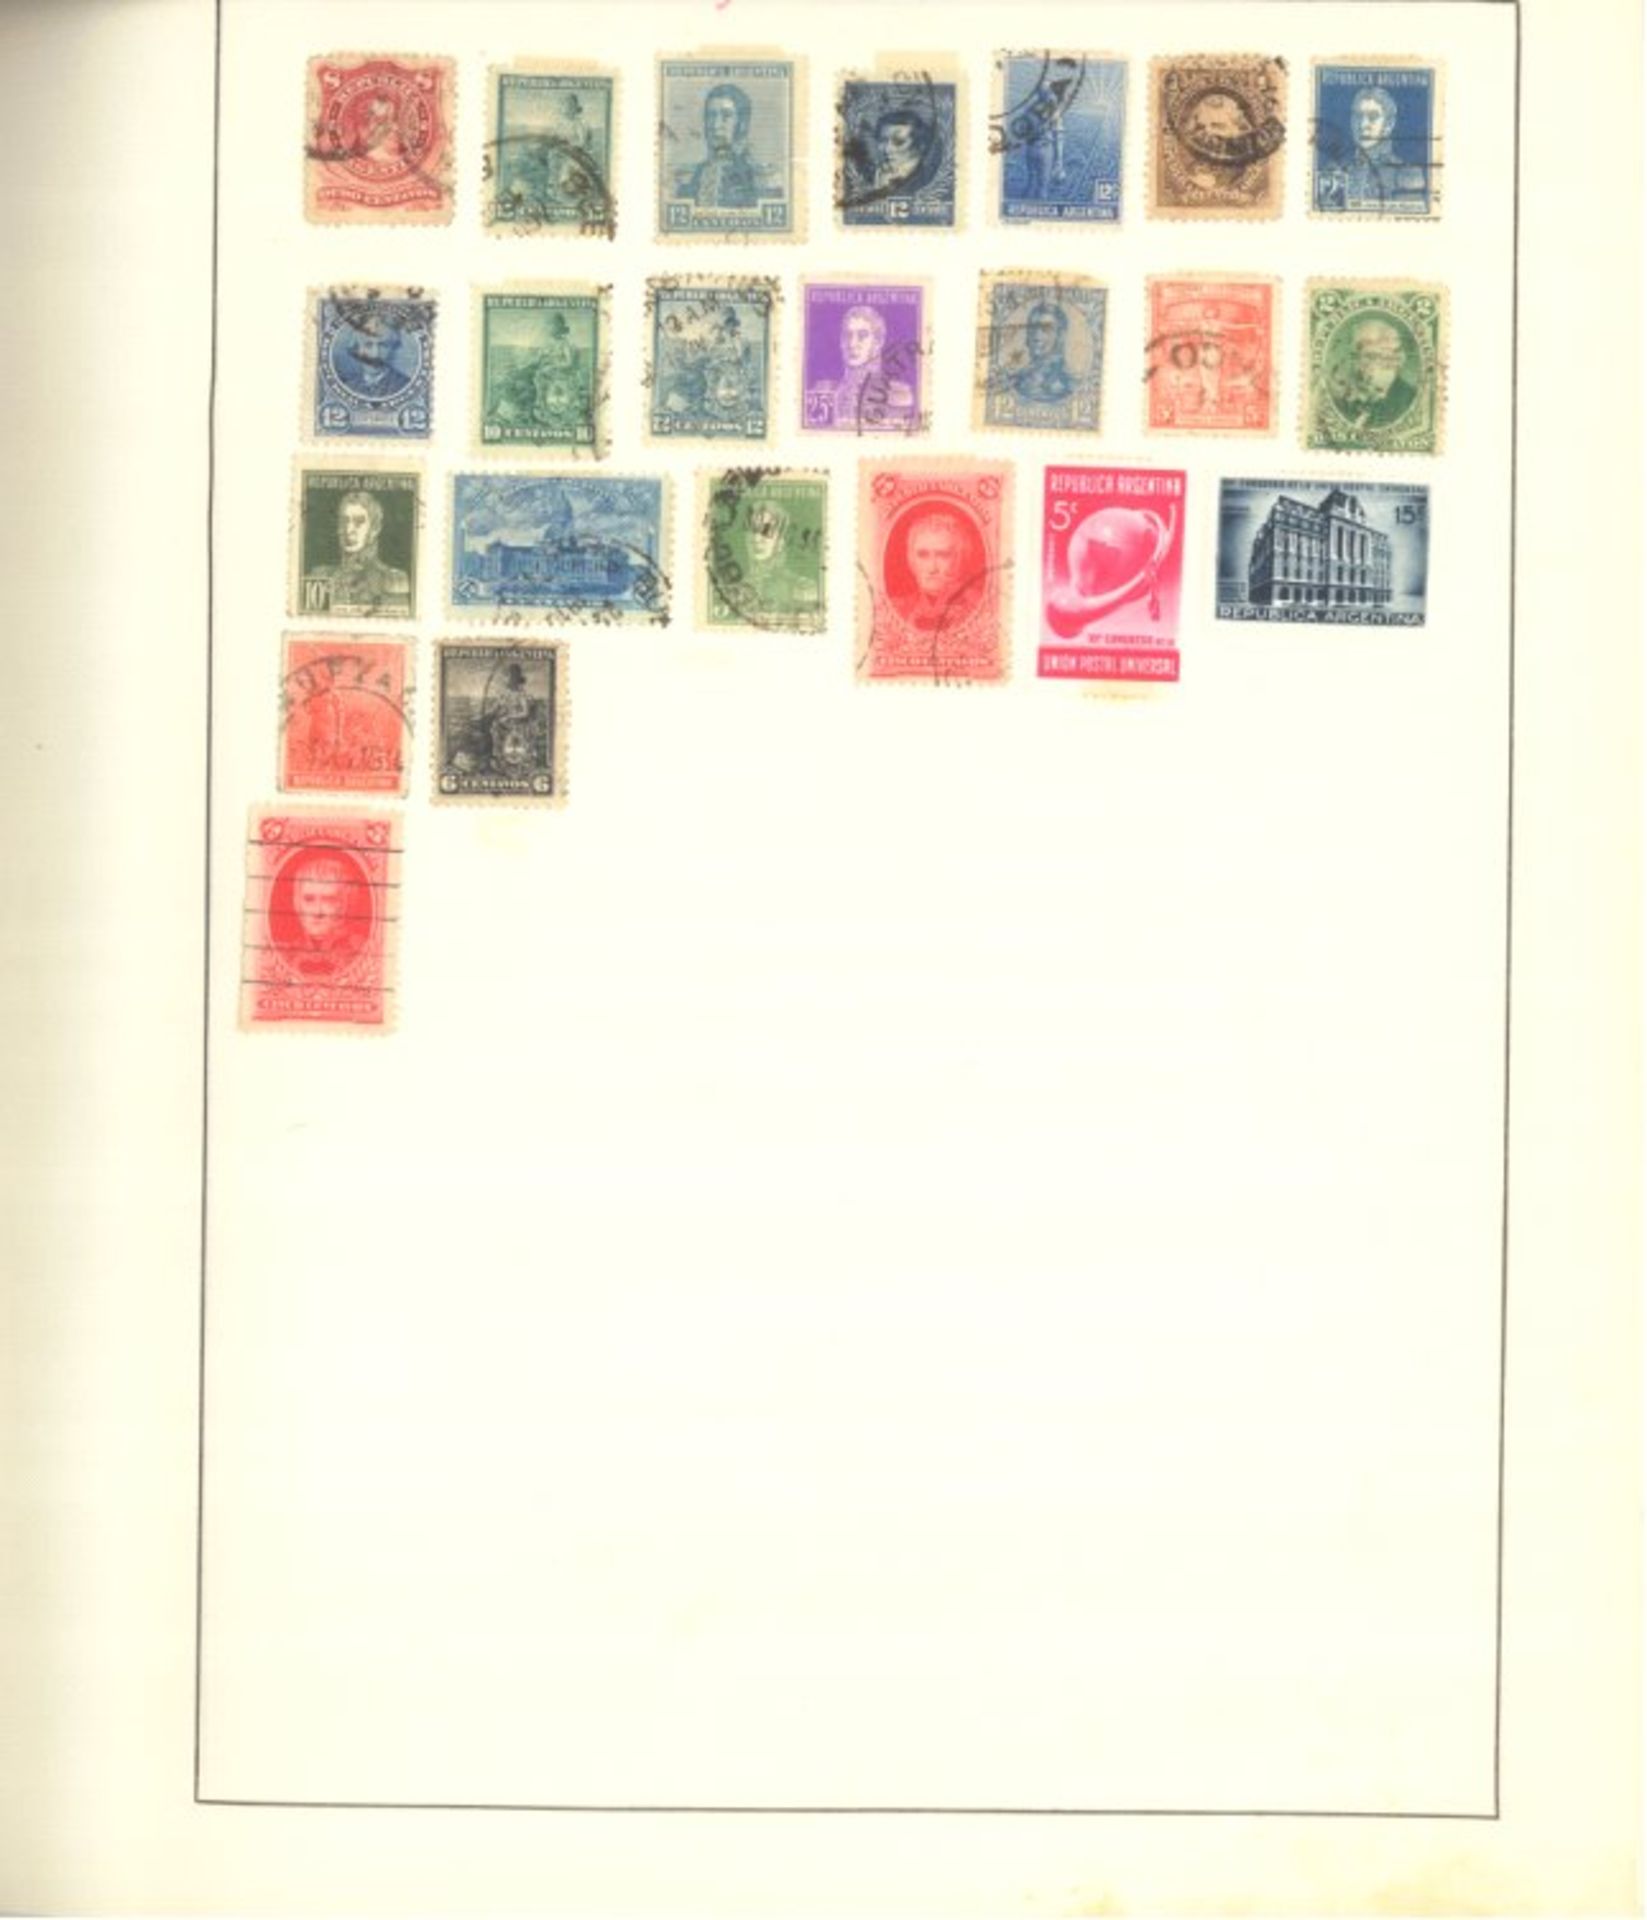 Schwanenberger: Altdeutschland/Reich/Gebiete/Europa/Übersee4 Alben der Verlags-Ausgabejahre 1939, - Bild 129 aus 165